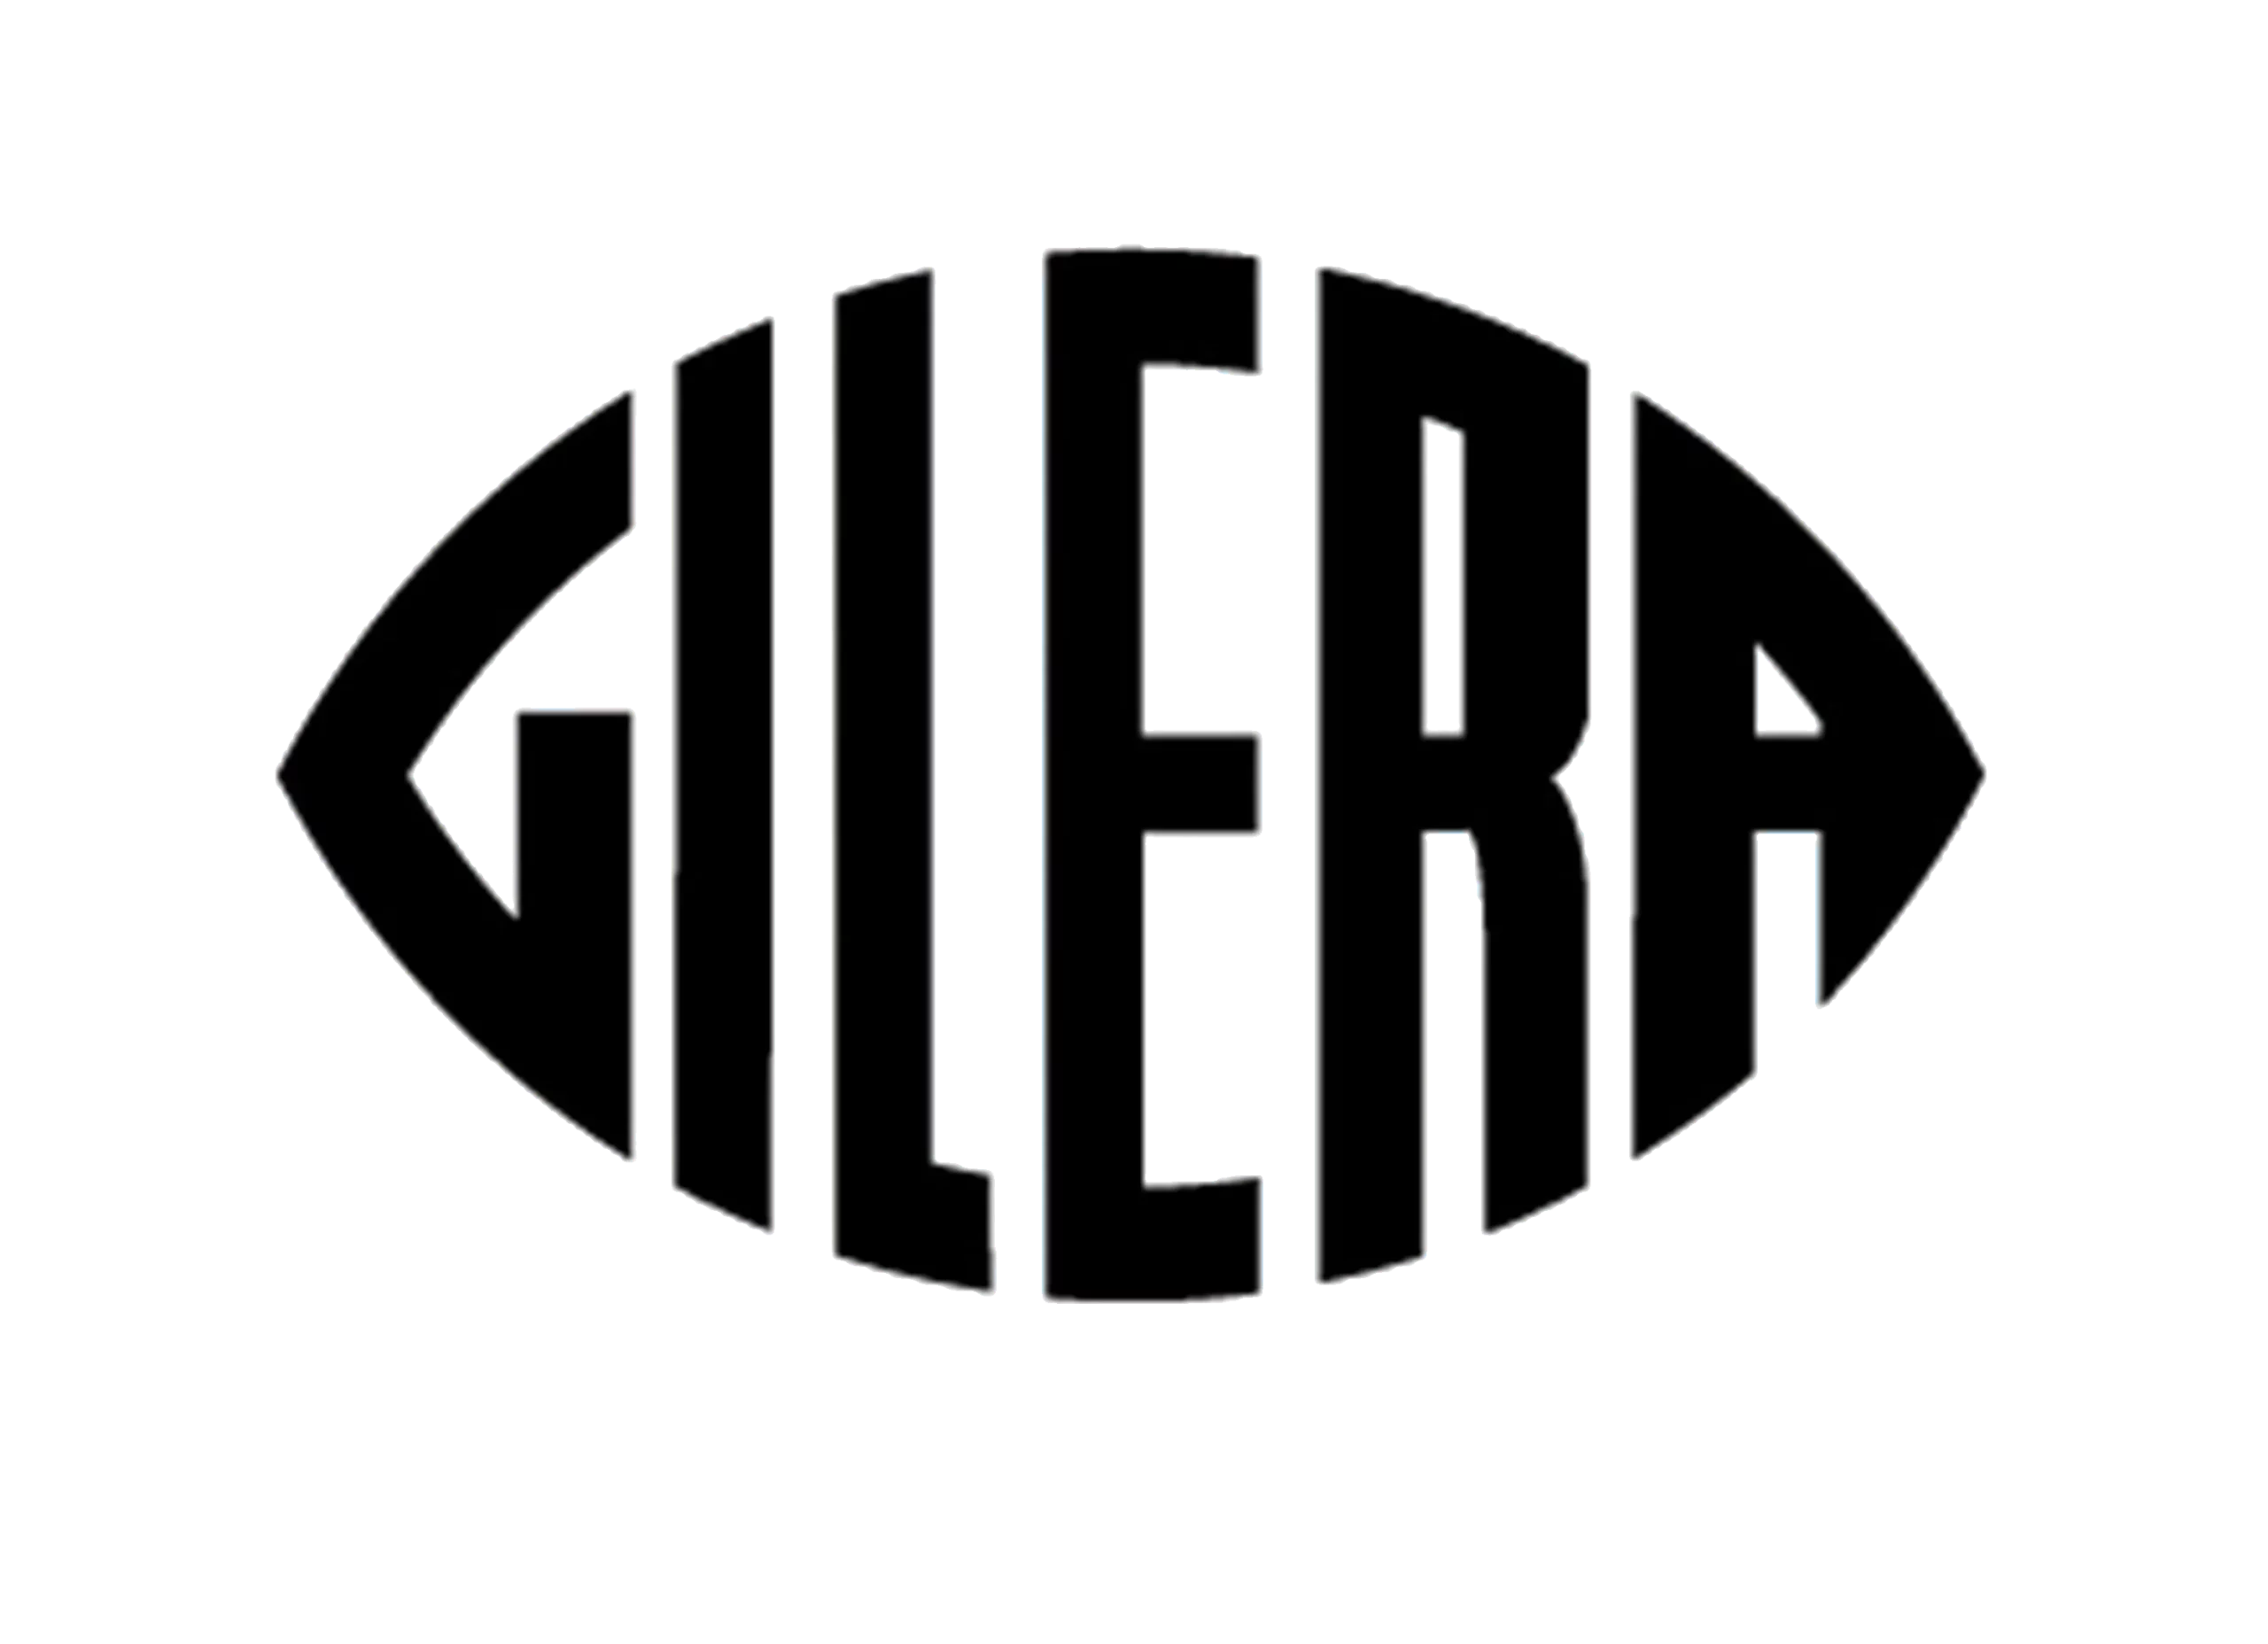 Gilera logo 1947-1954